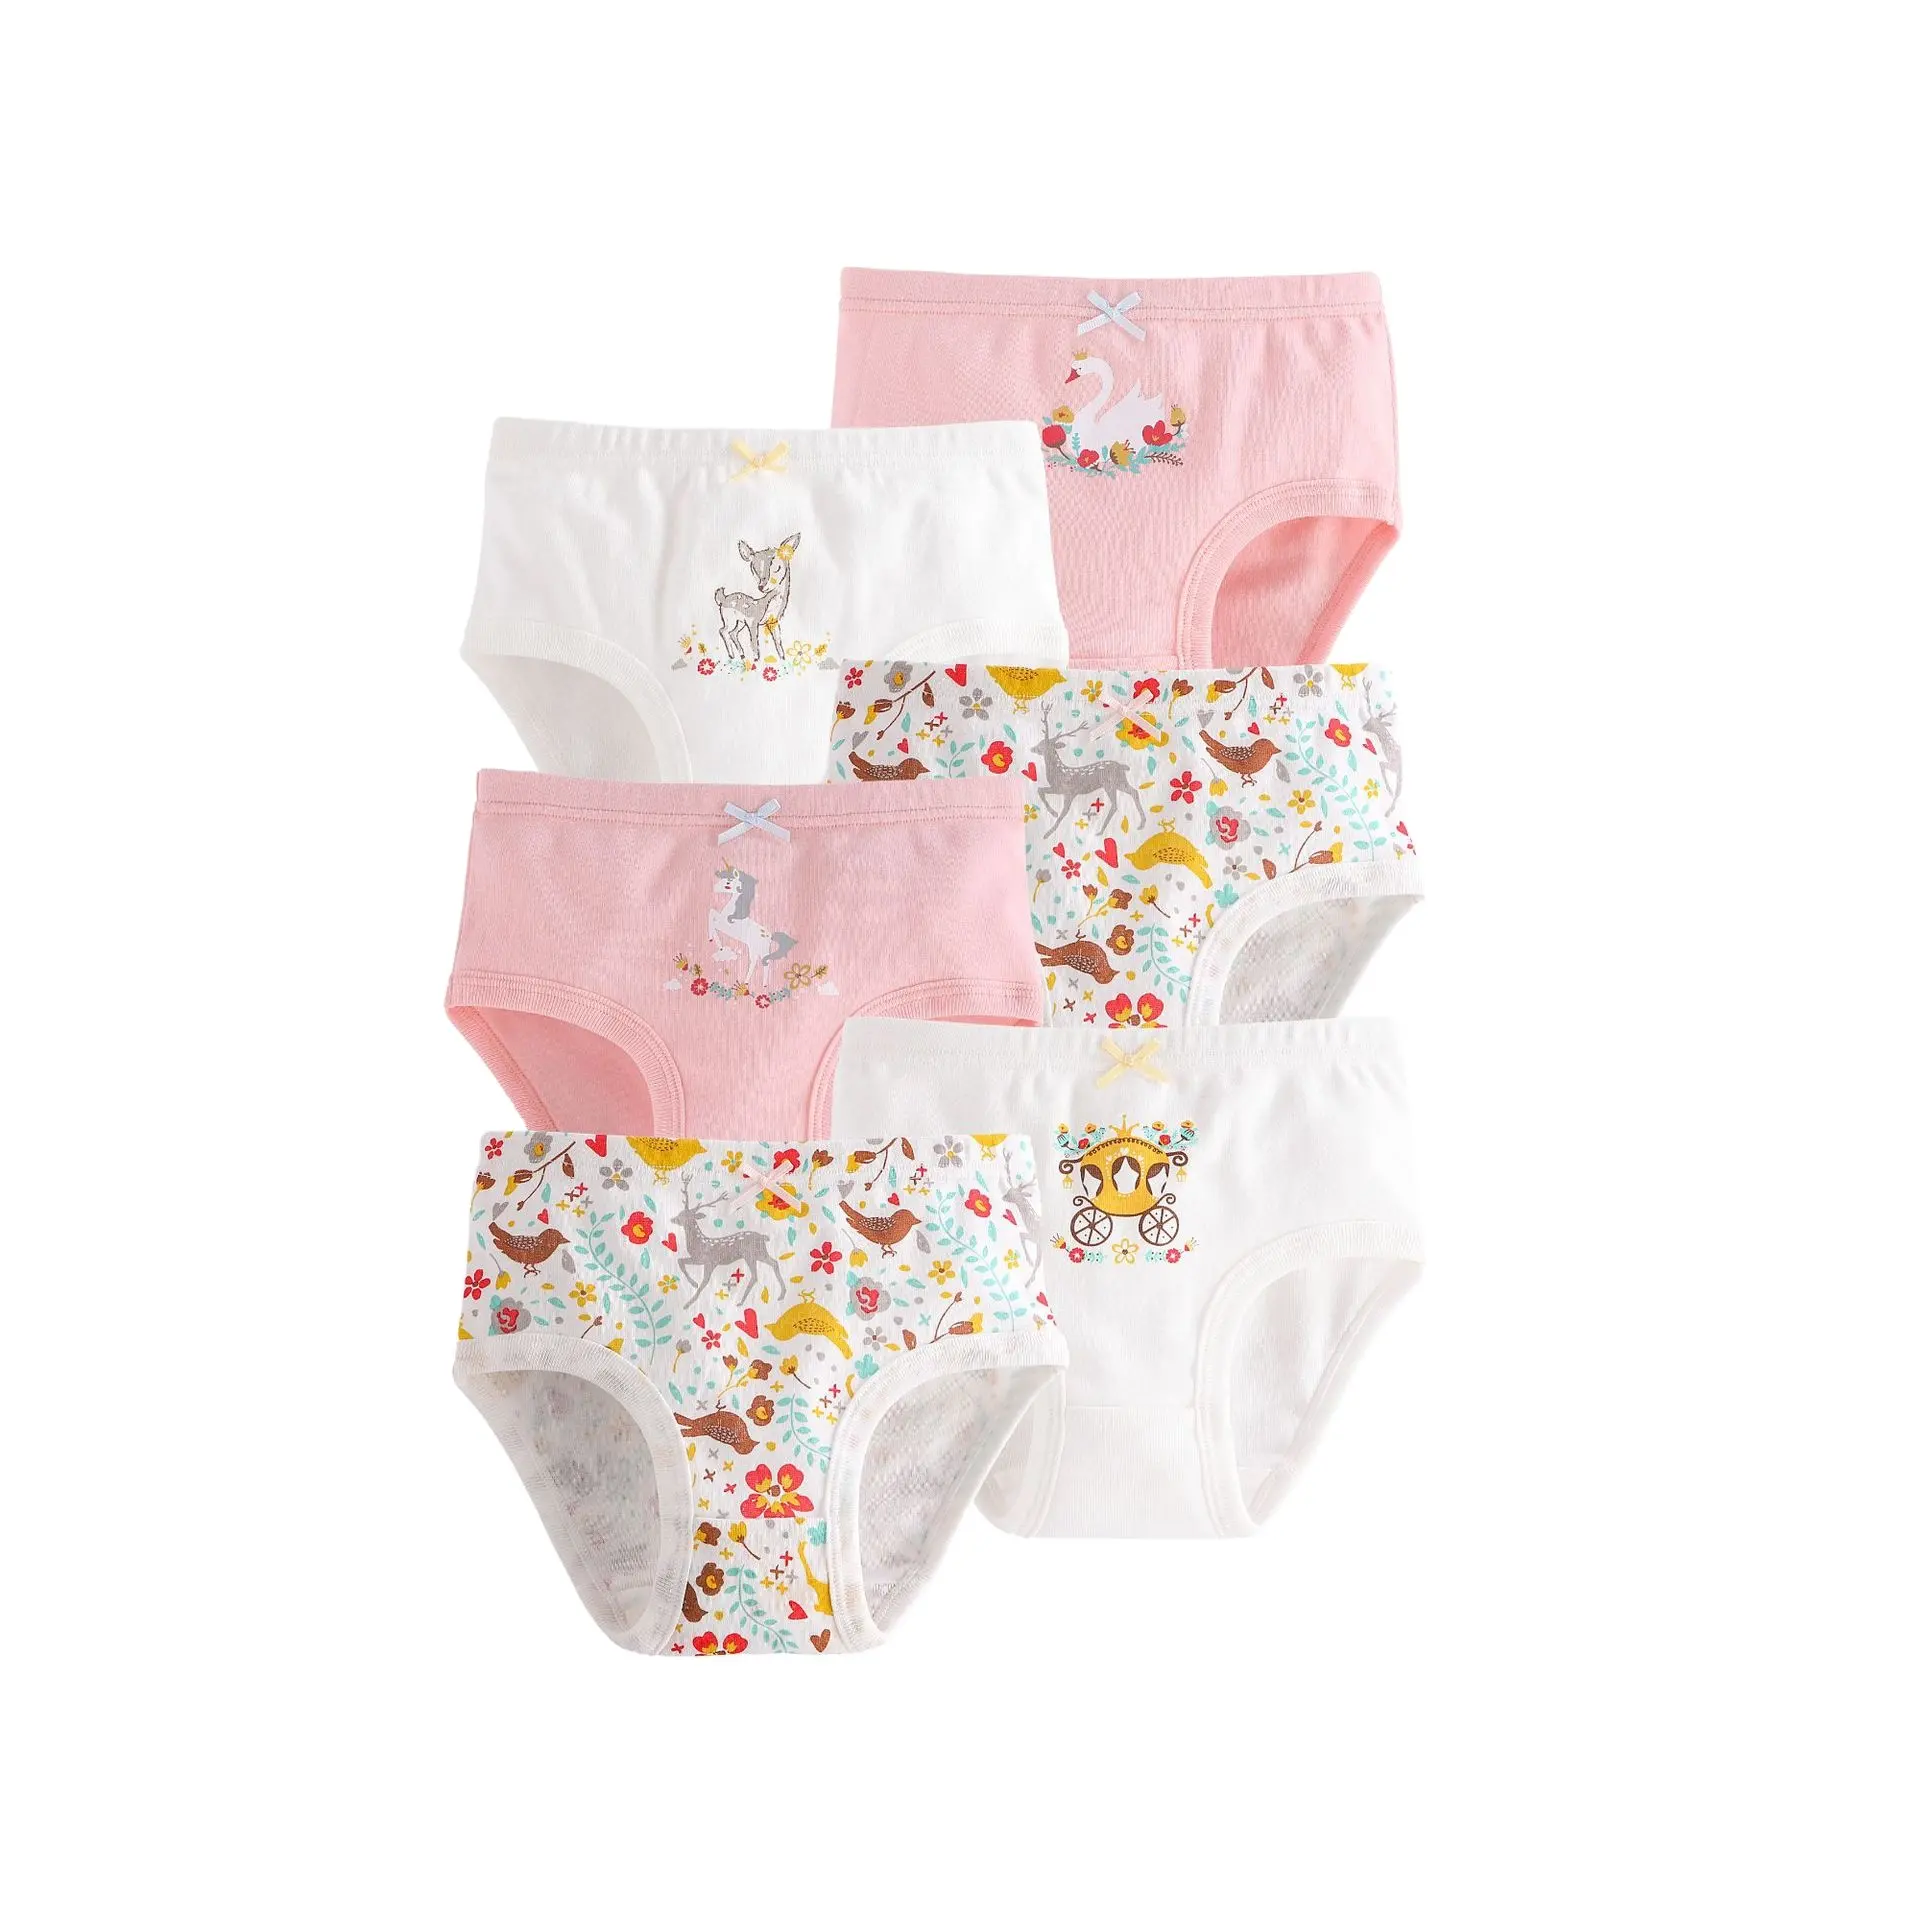 LF Crianças Meninas Briefs 6-pack Roupa Interior Adorável Impressão Bonito Algodão Macio Calcinha Thongs Para Crianças